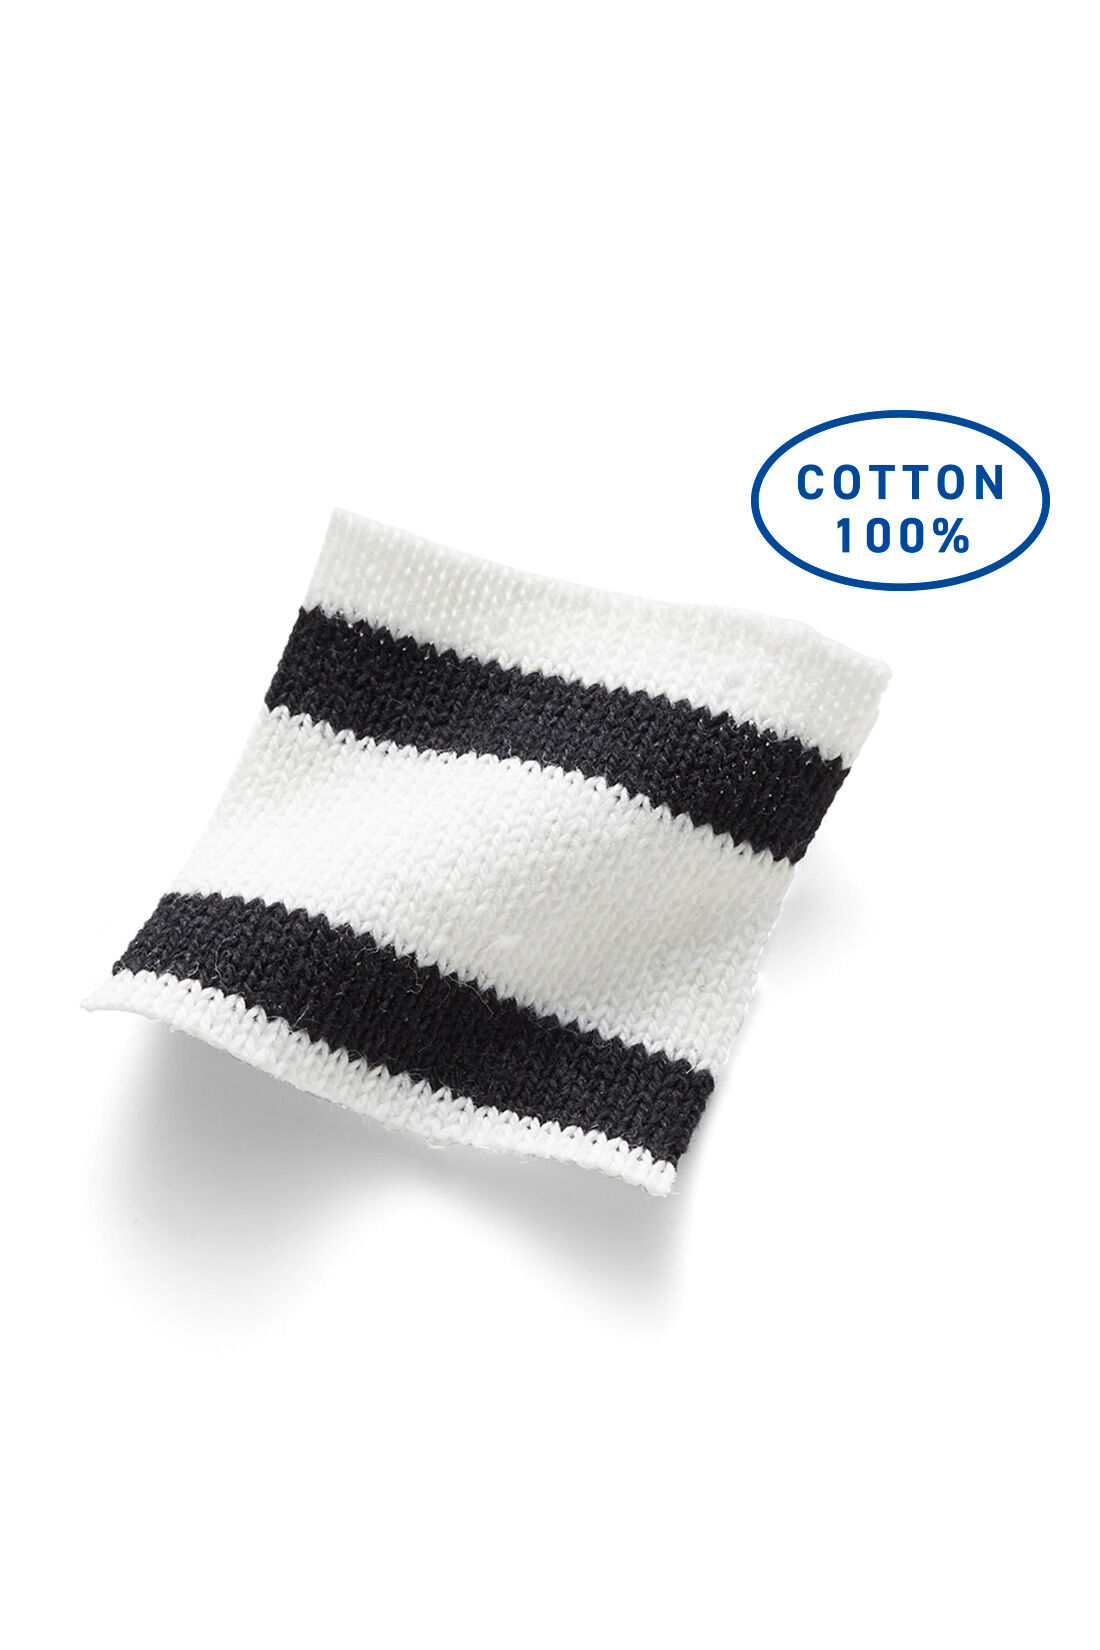 Live in  comfort|リブ イン コンフォート×ブルーデバードン ヘビーオンスの大人カジュアルボーダートップス〈オフホワイト×ブラック〉|空紡糸で織り上げた、ざっくり感がありつつやわらかな綿100％素材。